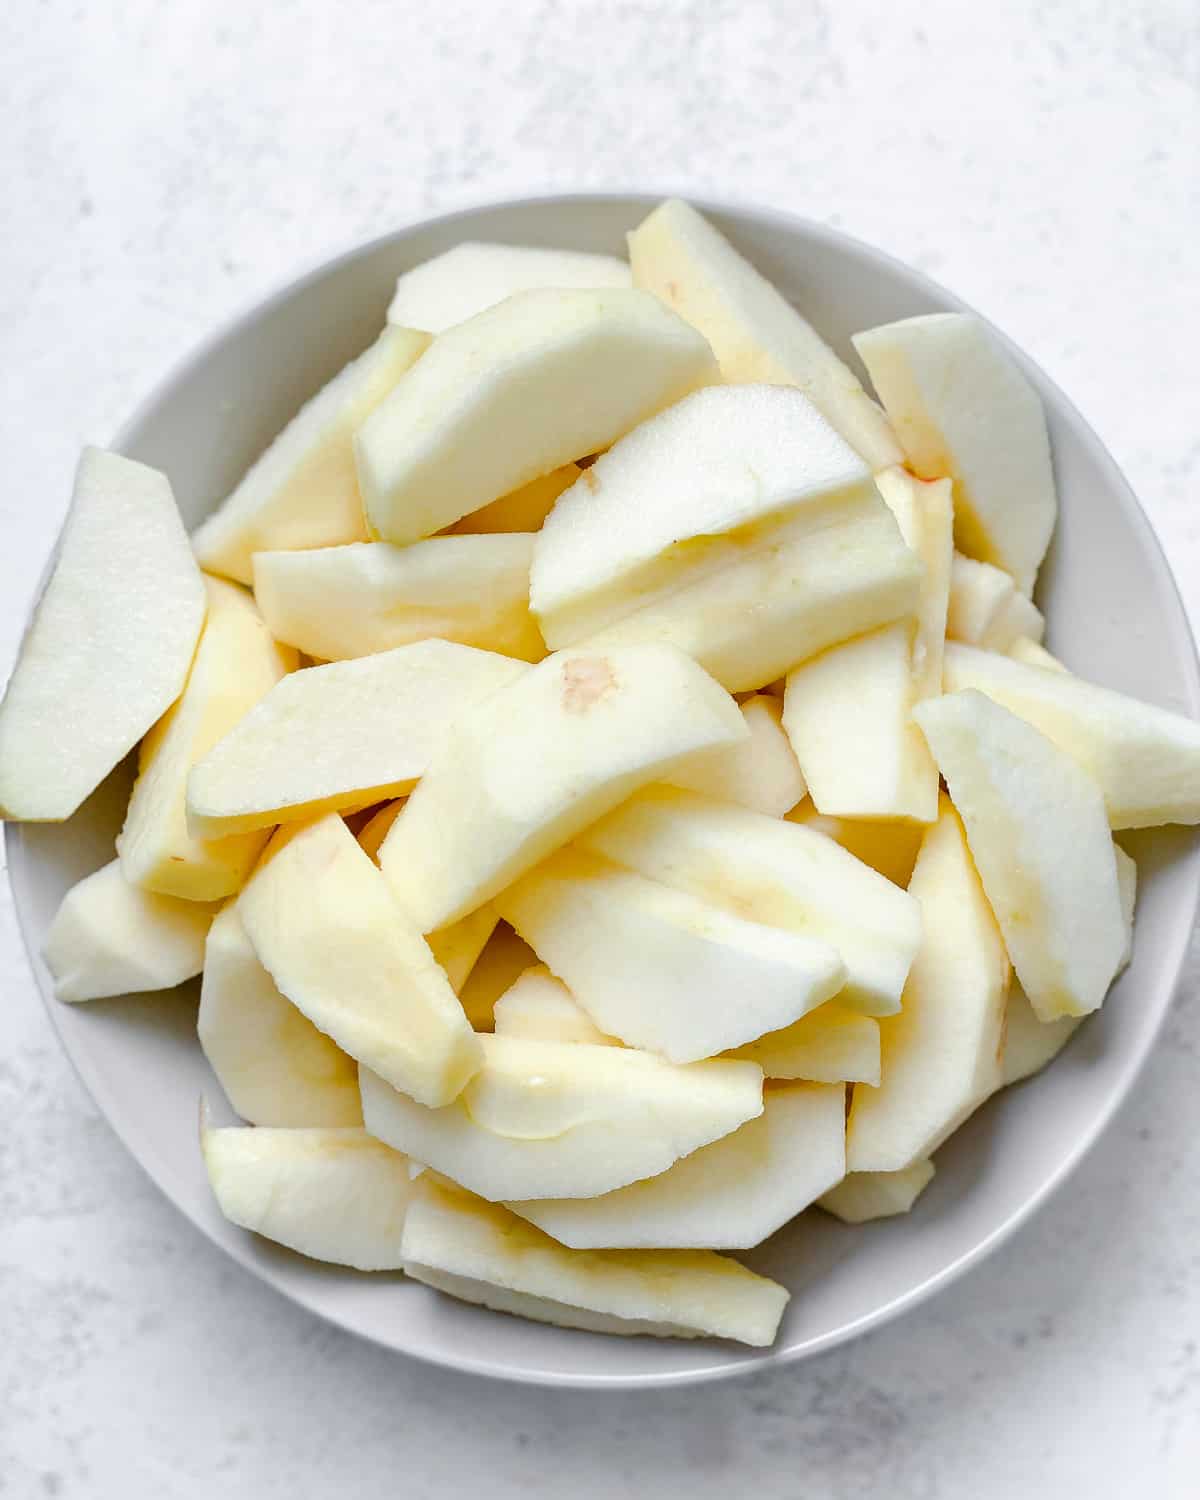 سیب های برش داده شده در یک کاسه سفید در برابر پس زمینه سفید